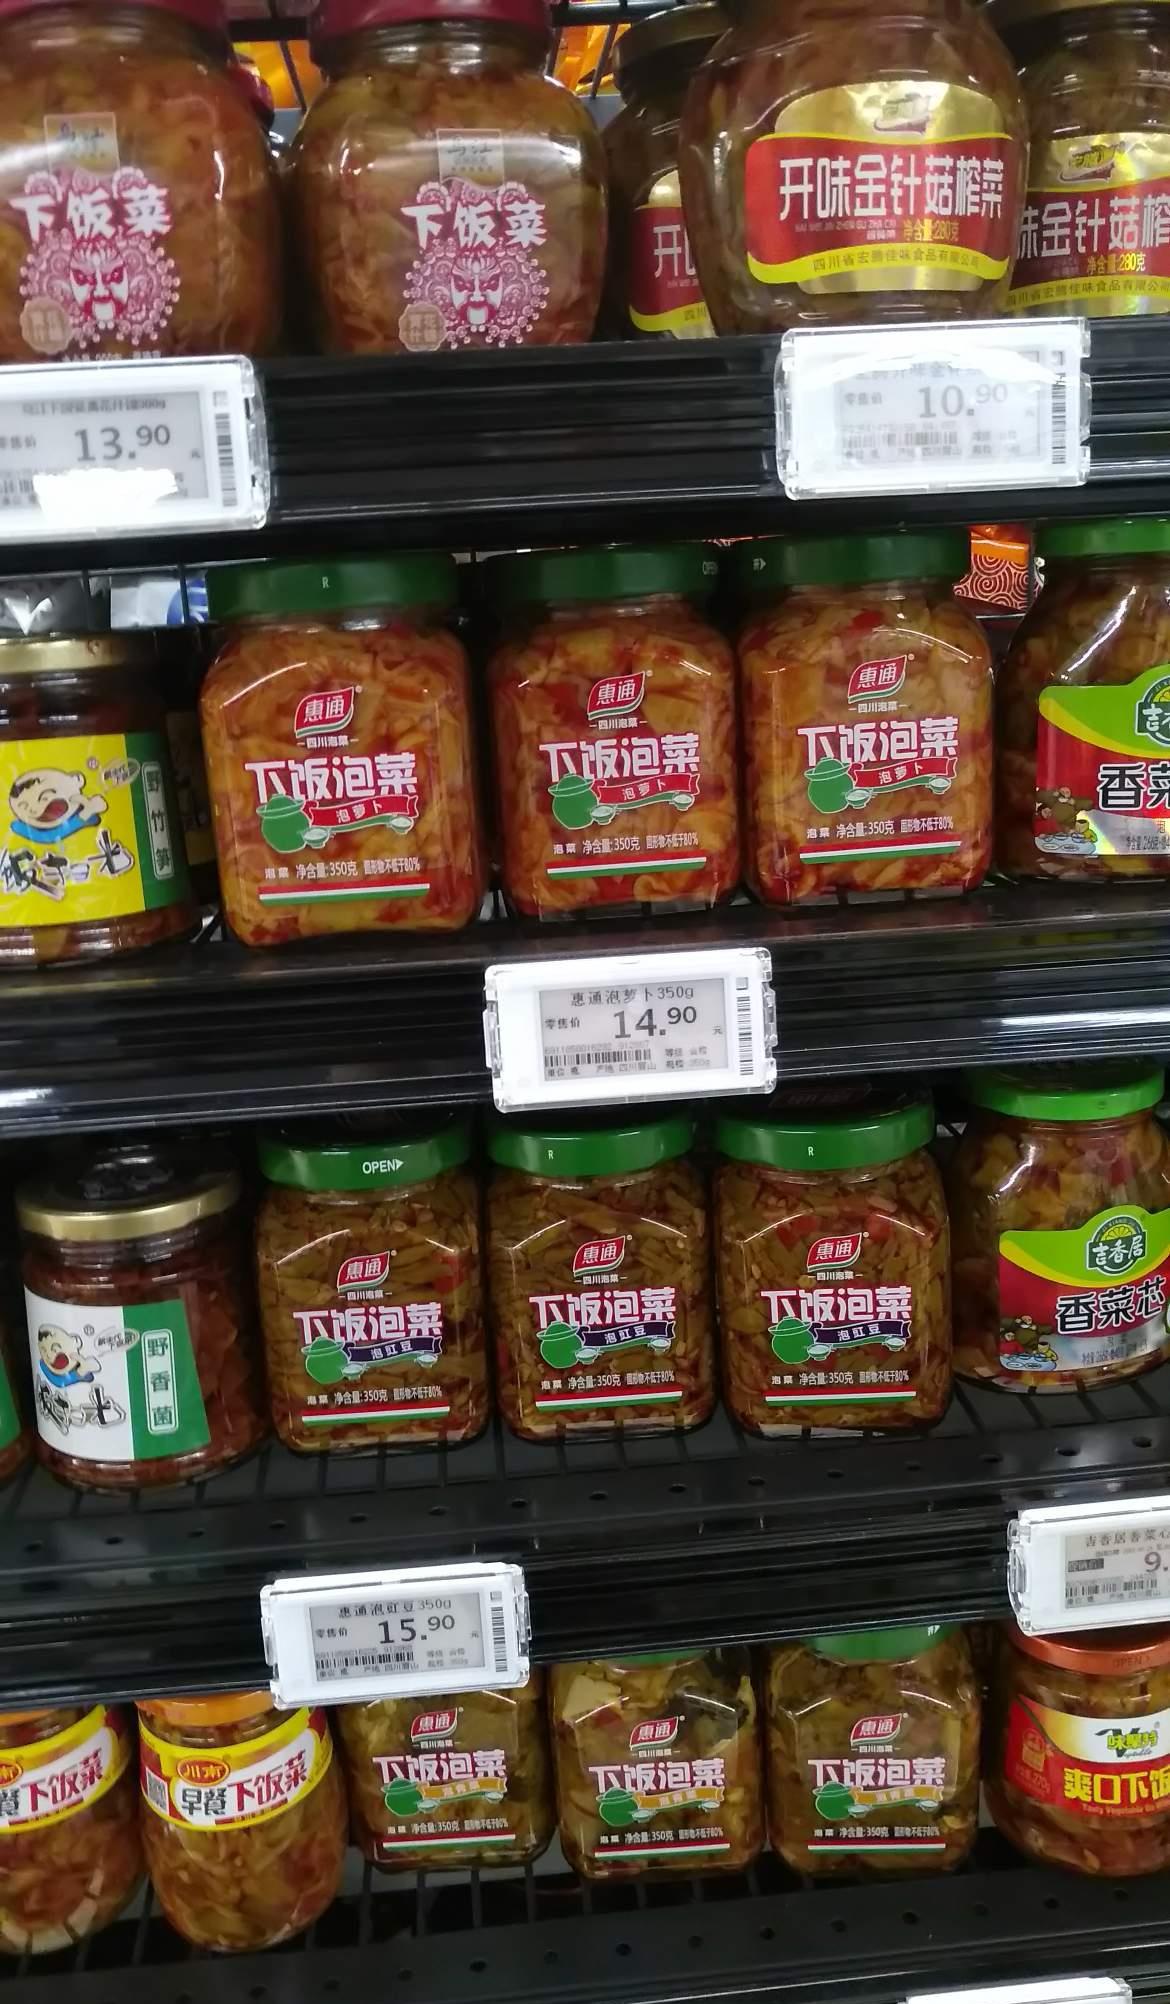 永辉超市 福州 榨菜依然新鲜 惠通开始铺货抢市场阶段